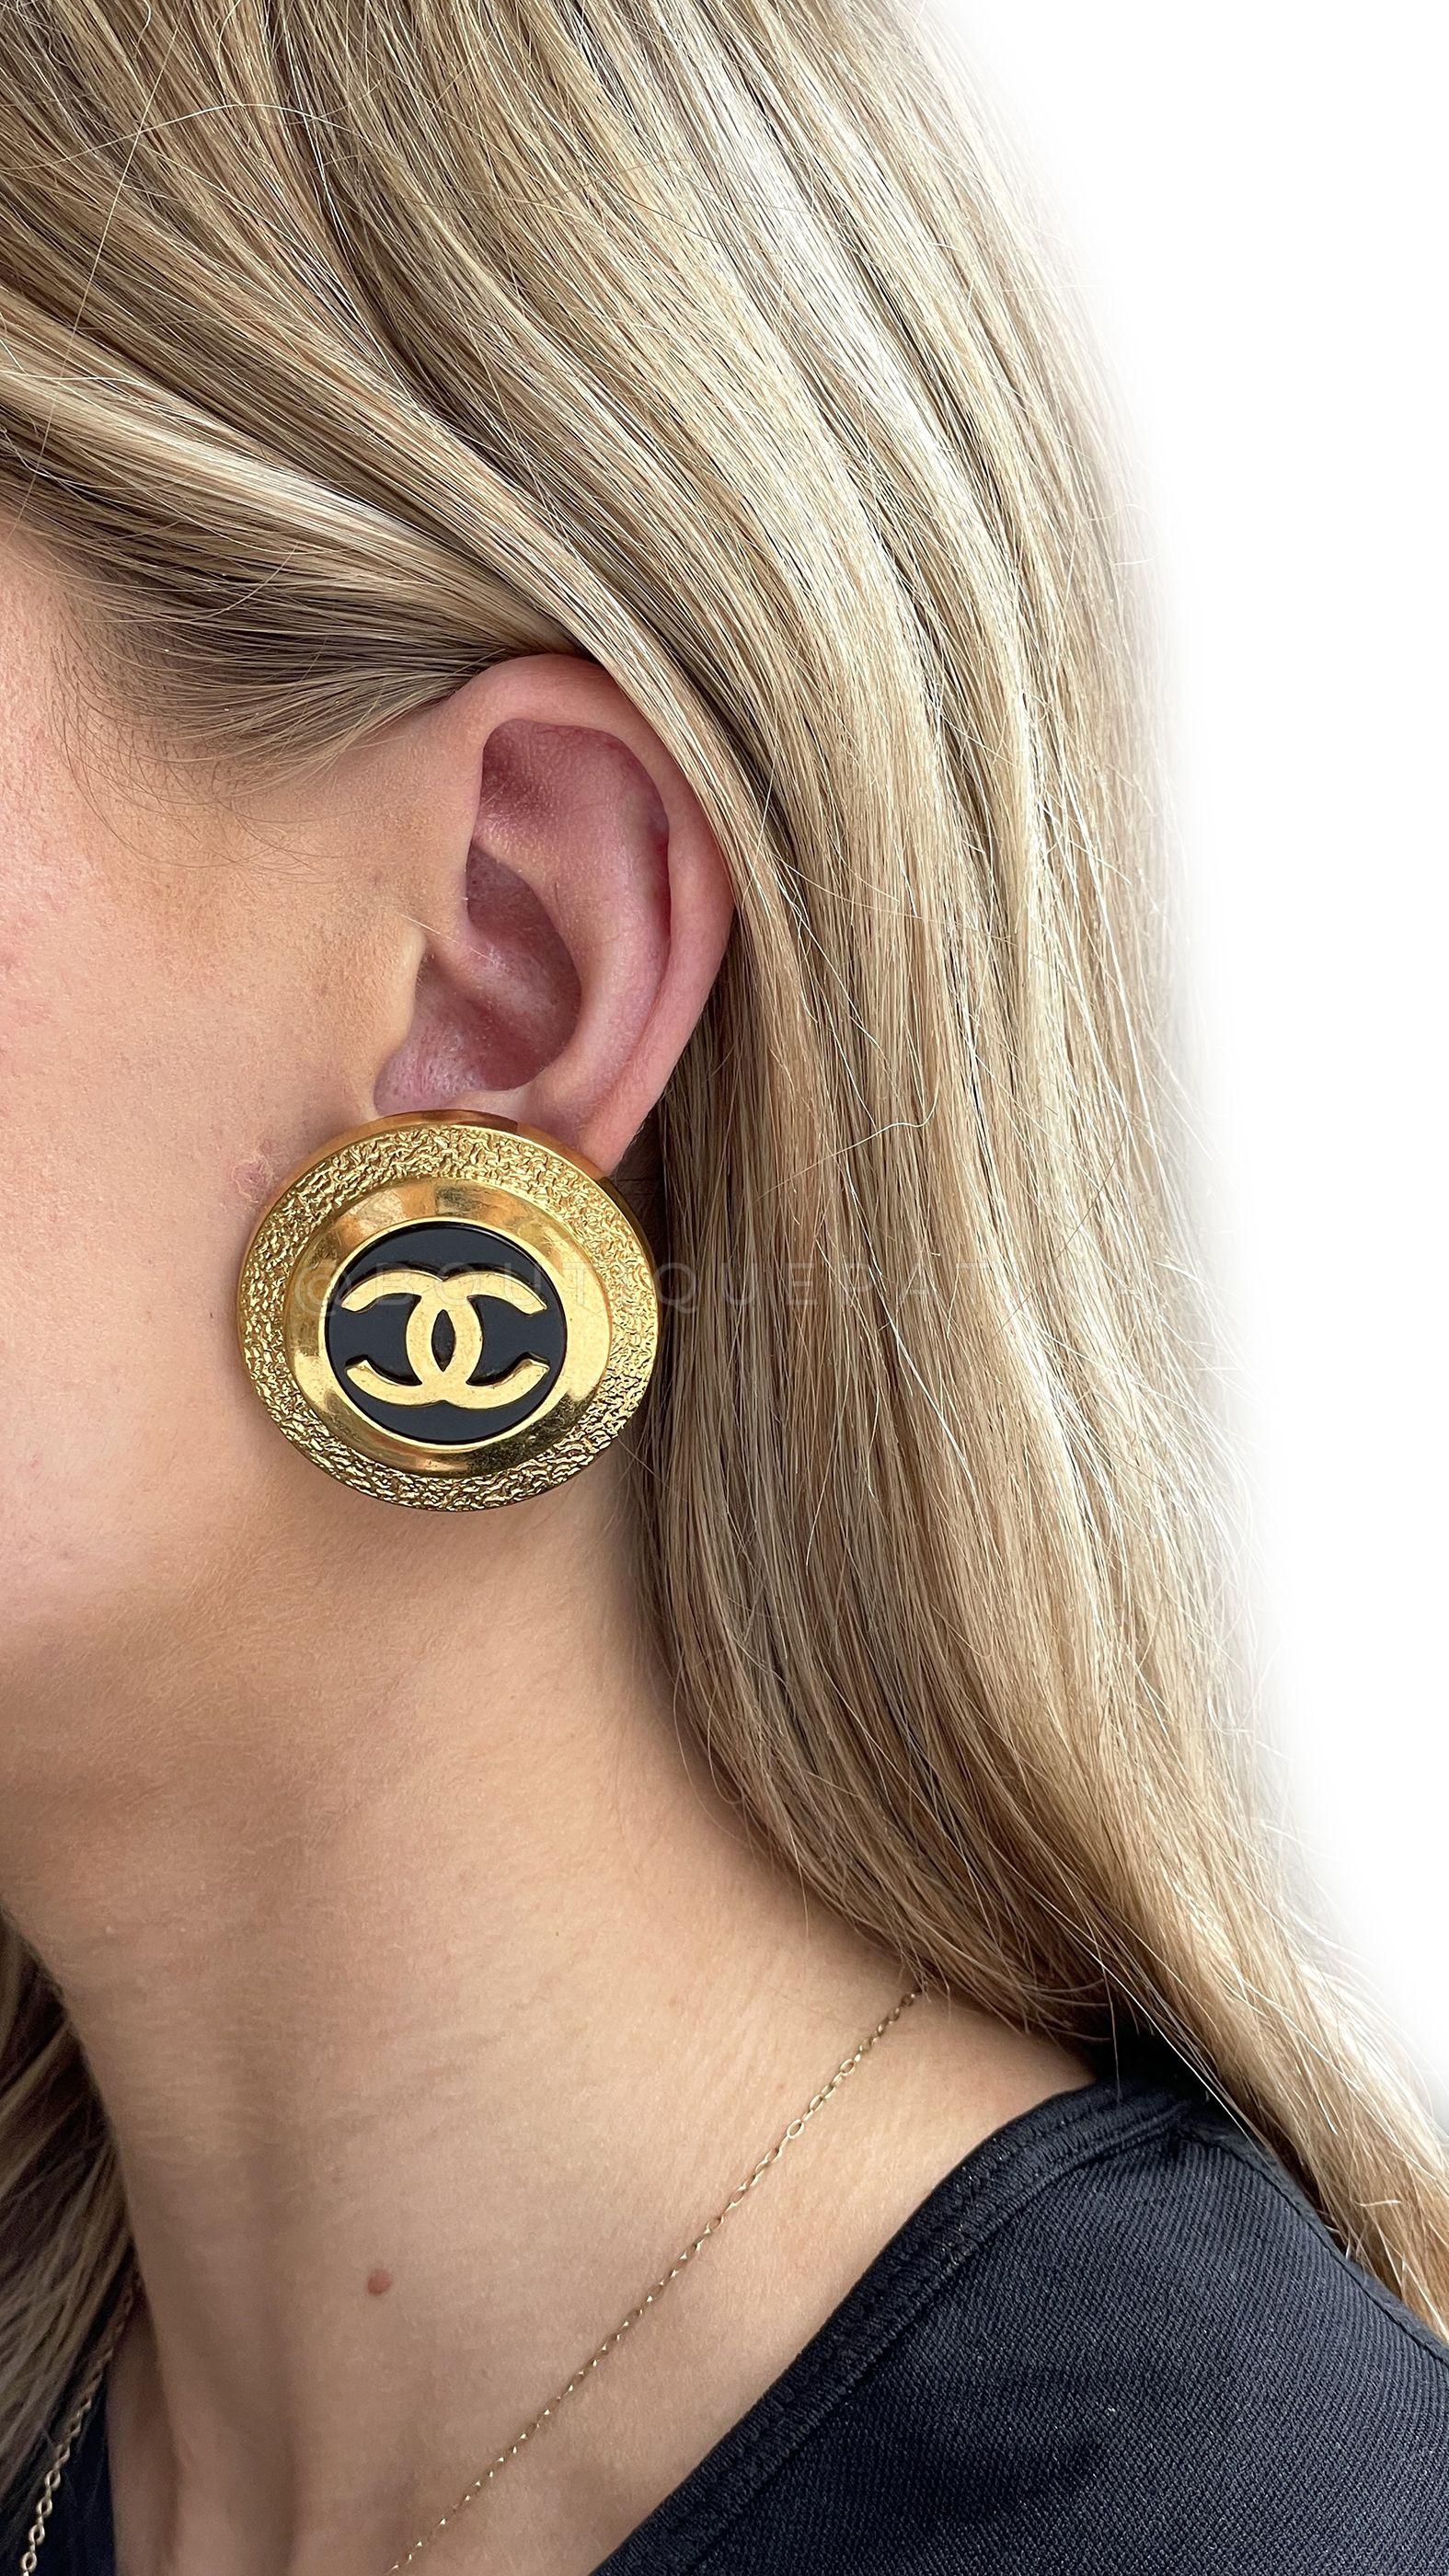 chanel earrings classic